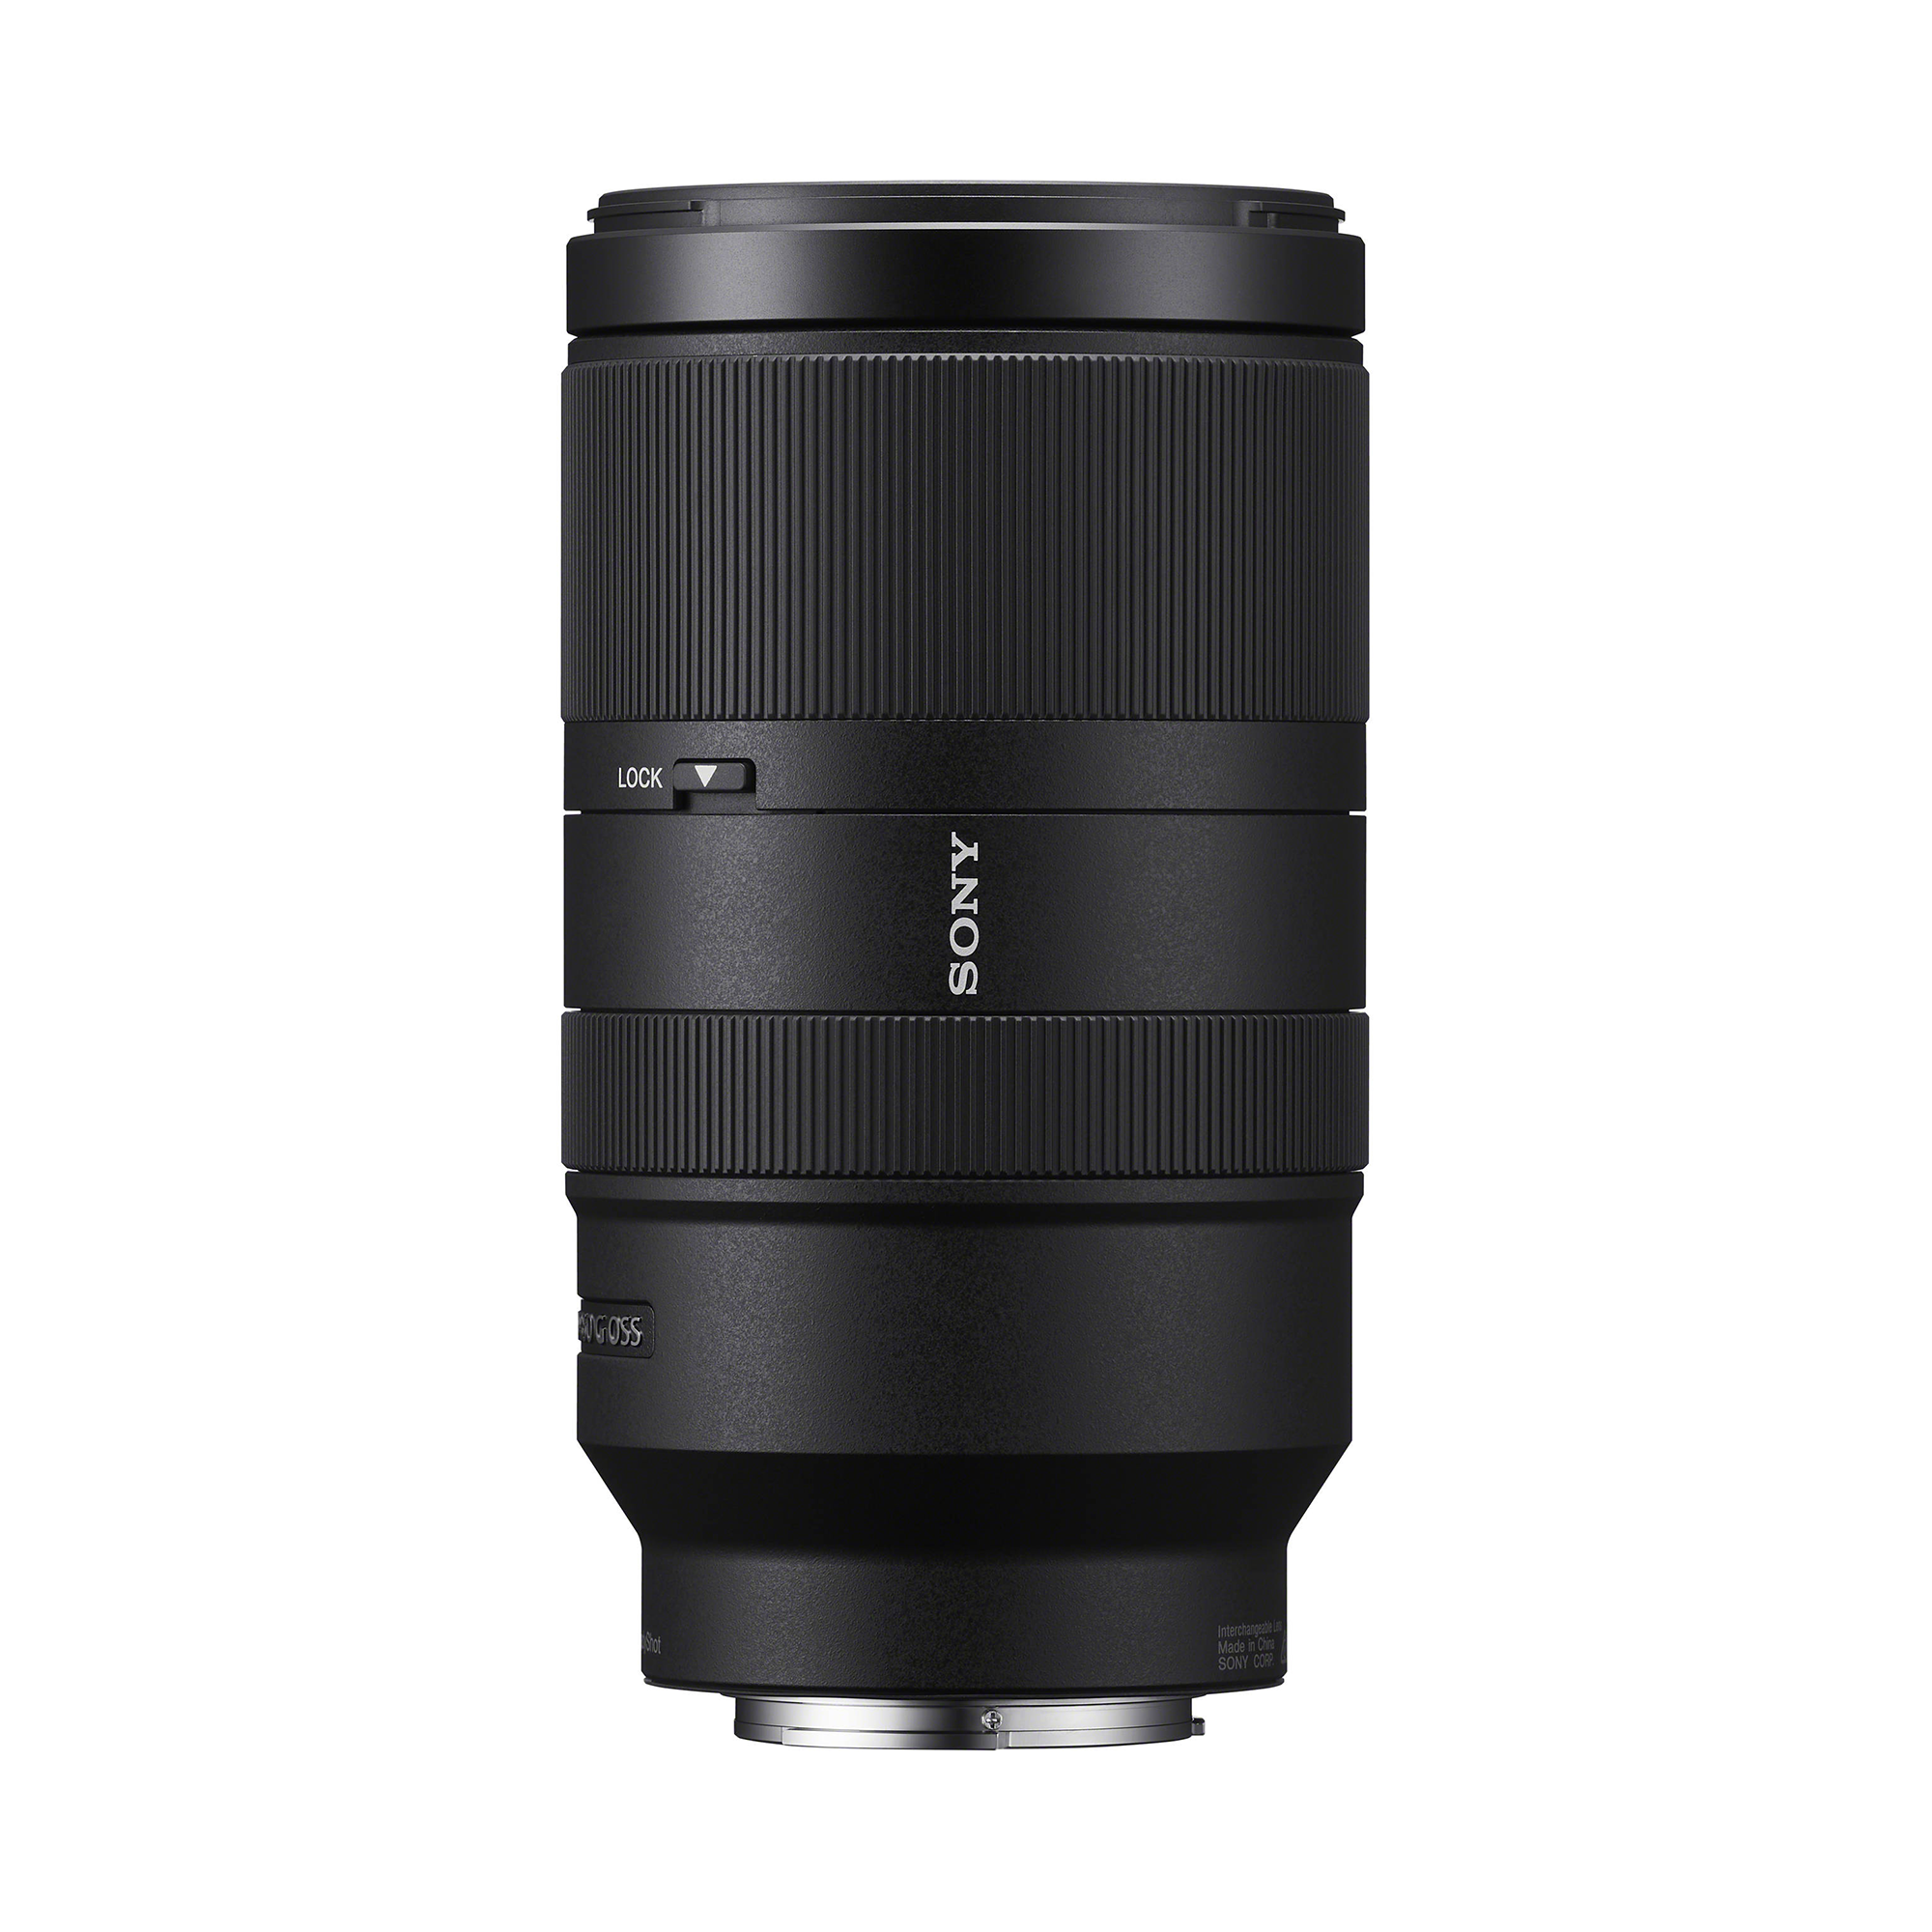 Sony E 70-350mm f/4.5-6.3 G OSS Lens